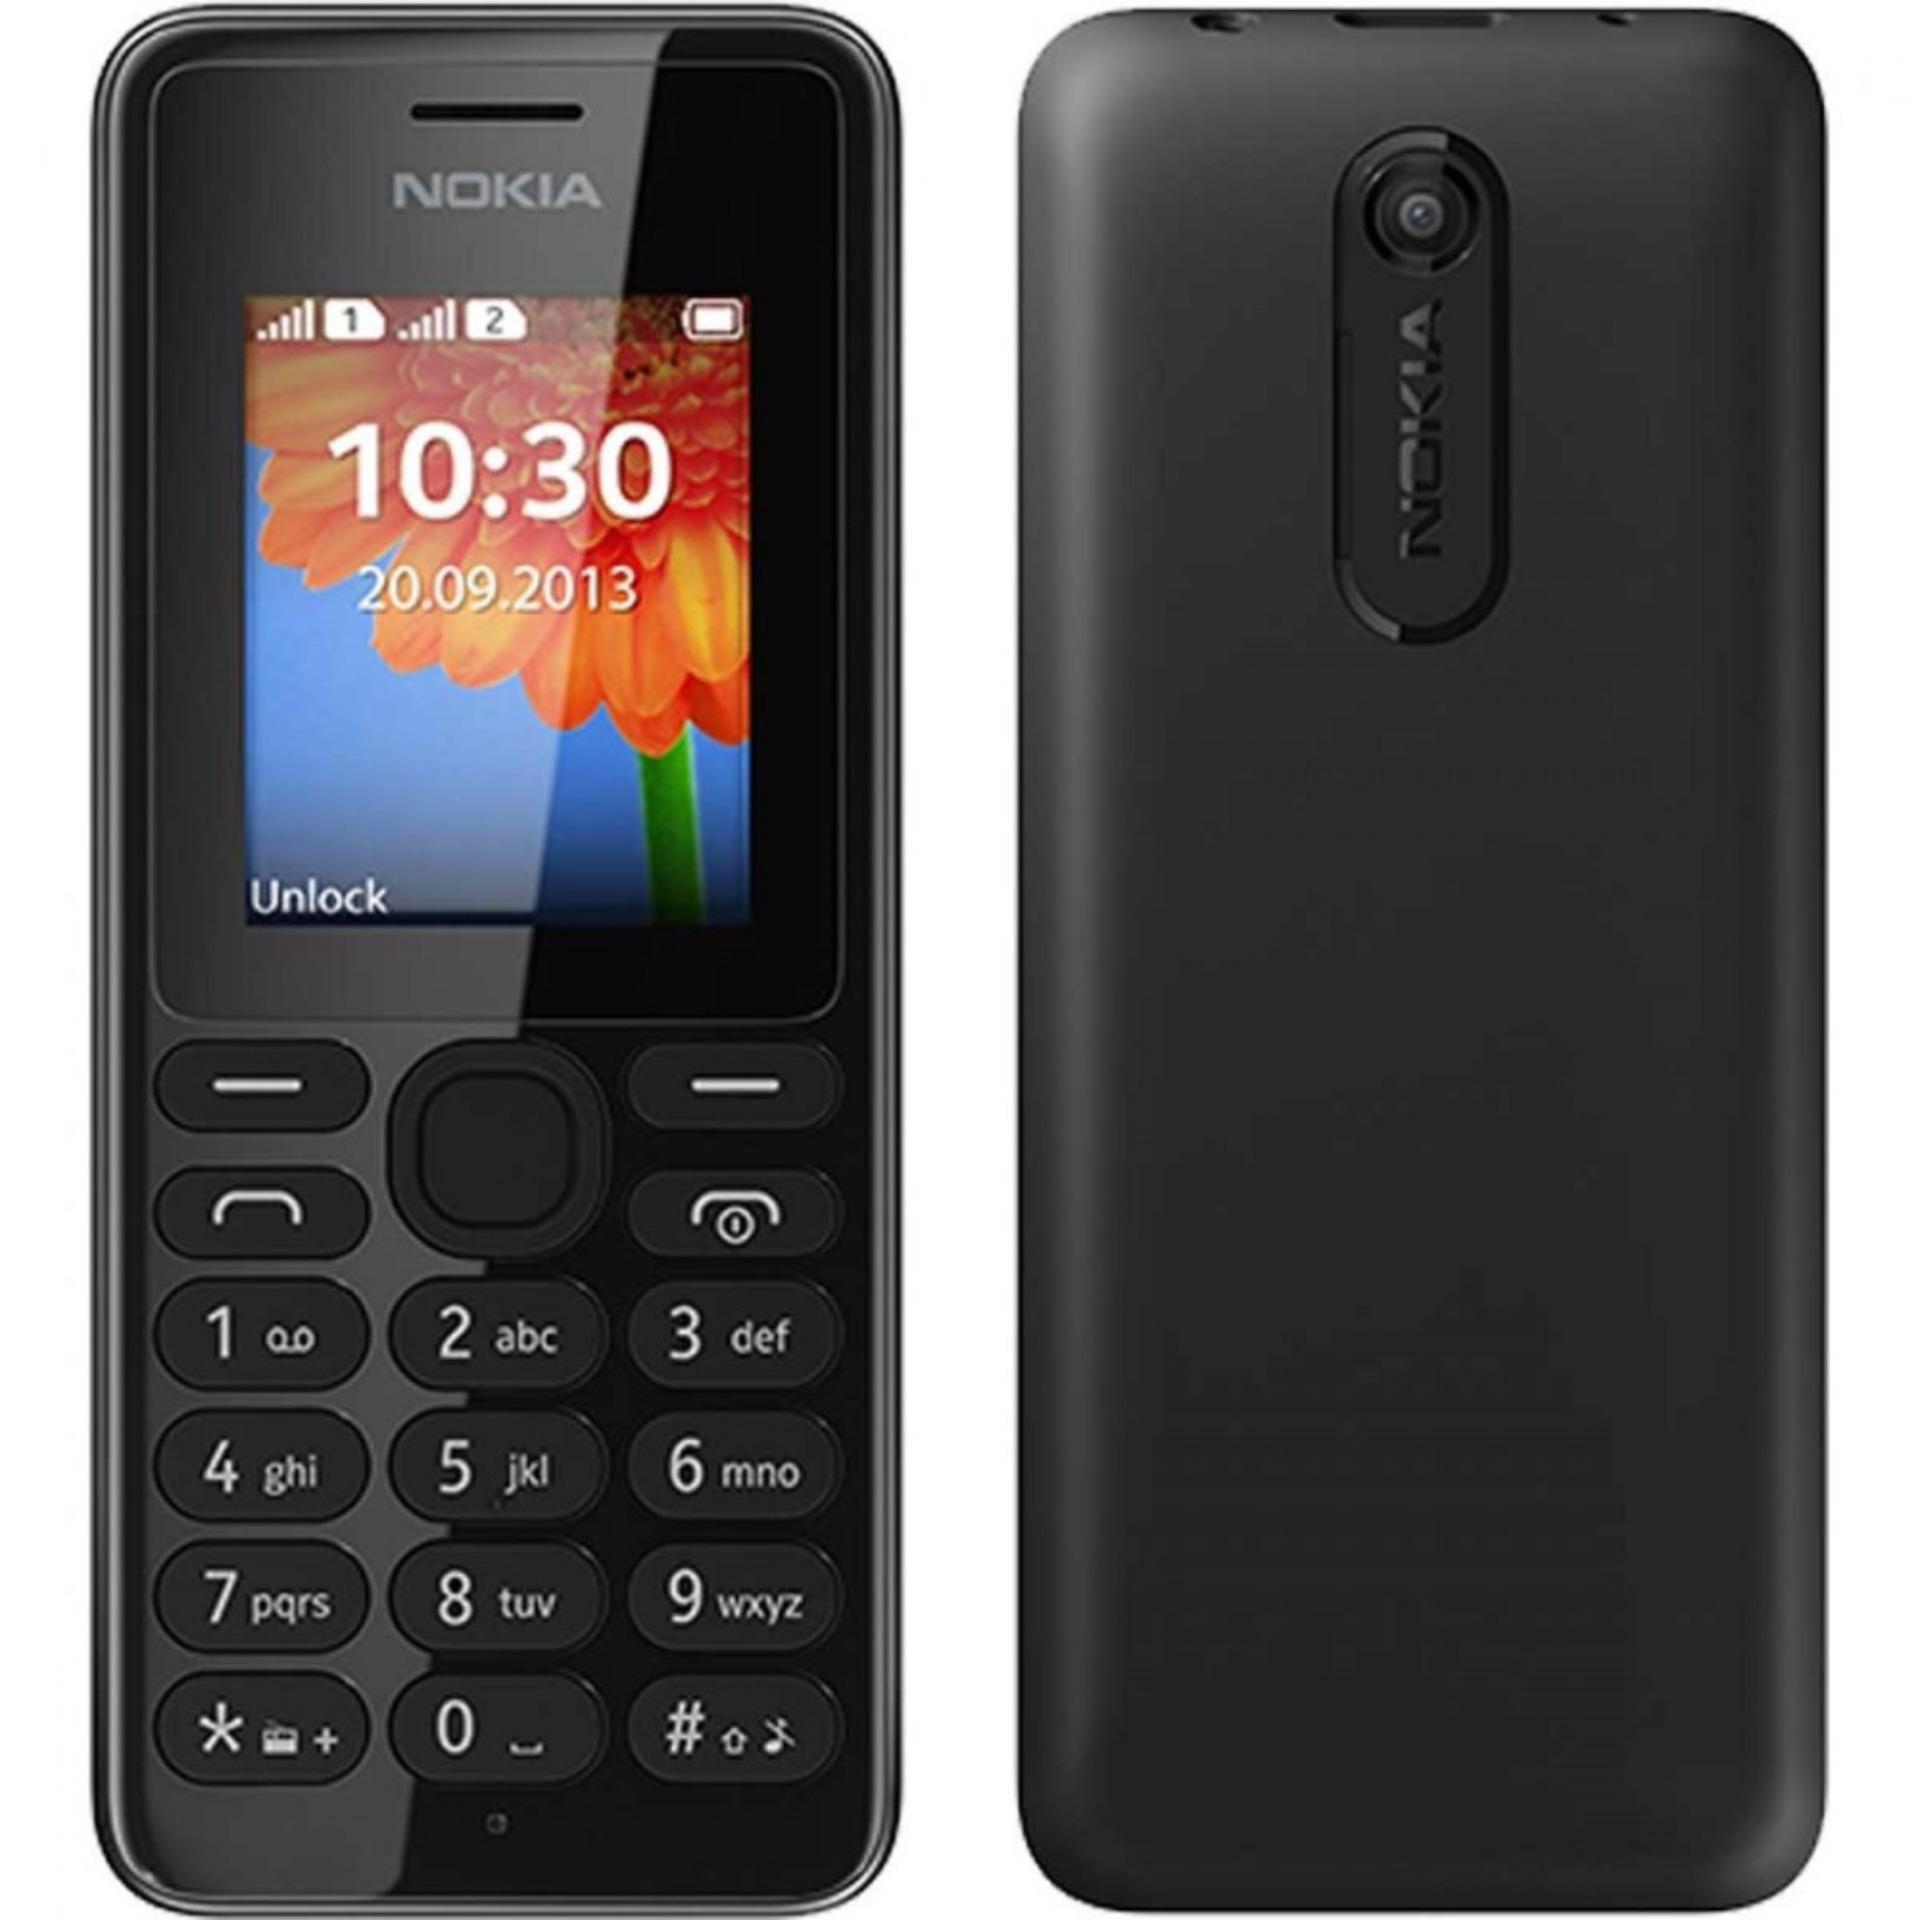 Điện thoại Nokia 108 2 SIM - (Máy pin sạc) - Hàng công ty Chính Hiệu - NNMT Store